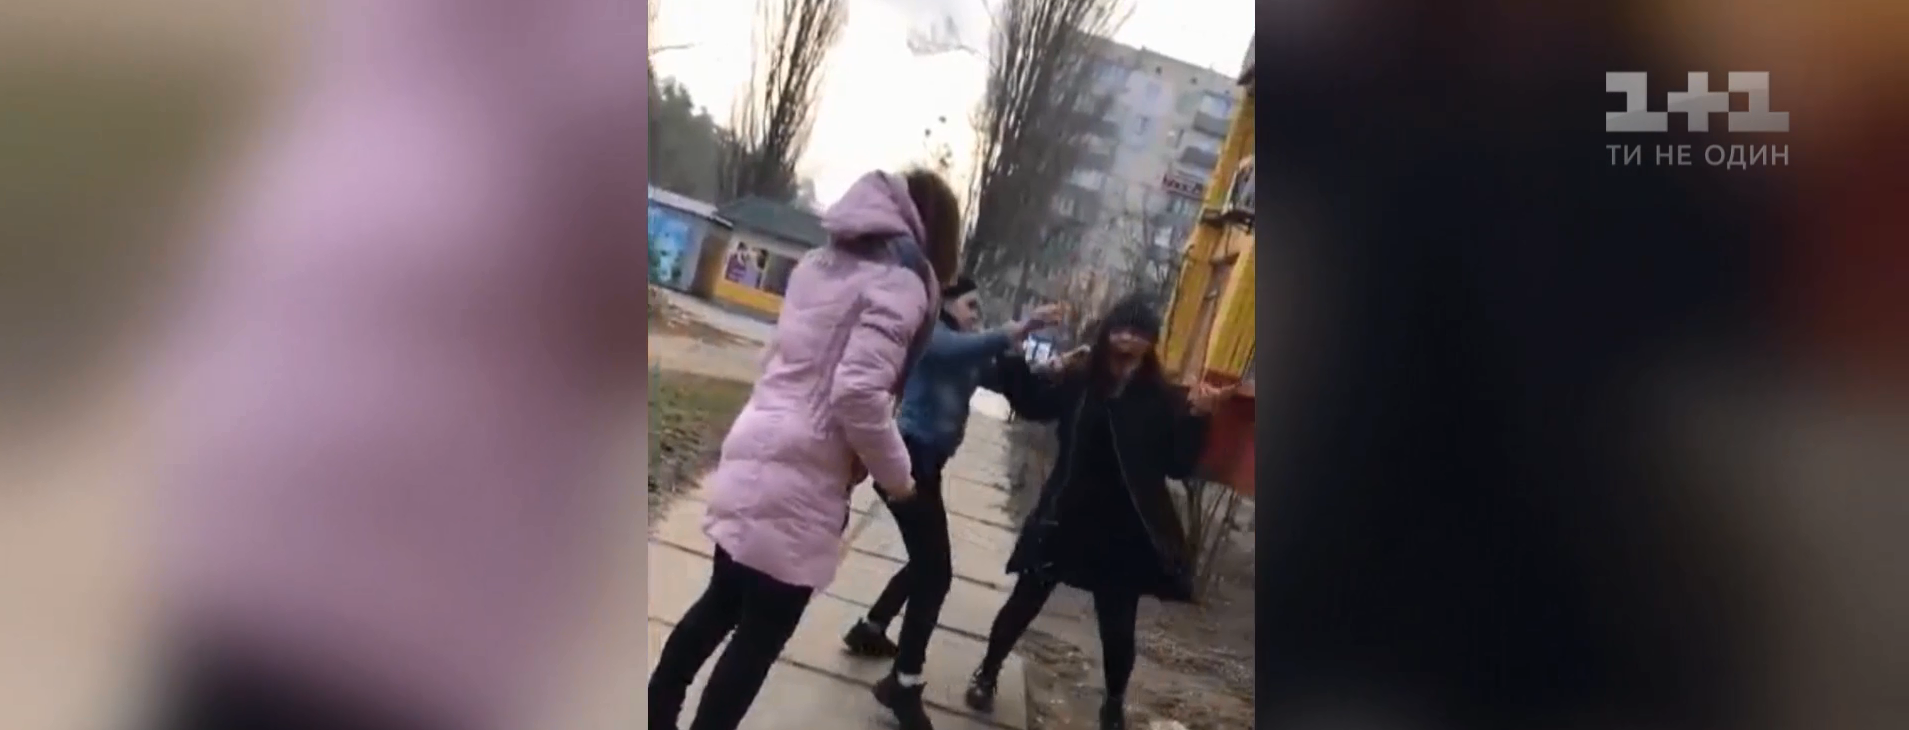 У Києві на Борщагівці дівчата побили однокласницю й виклали відео в соцмережі